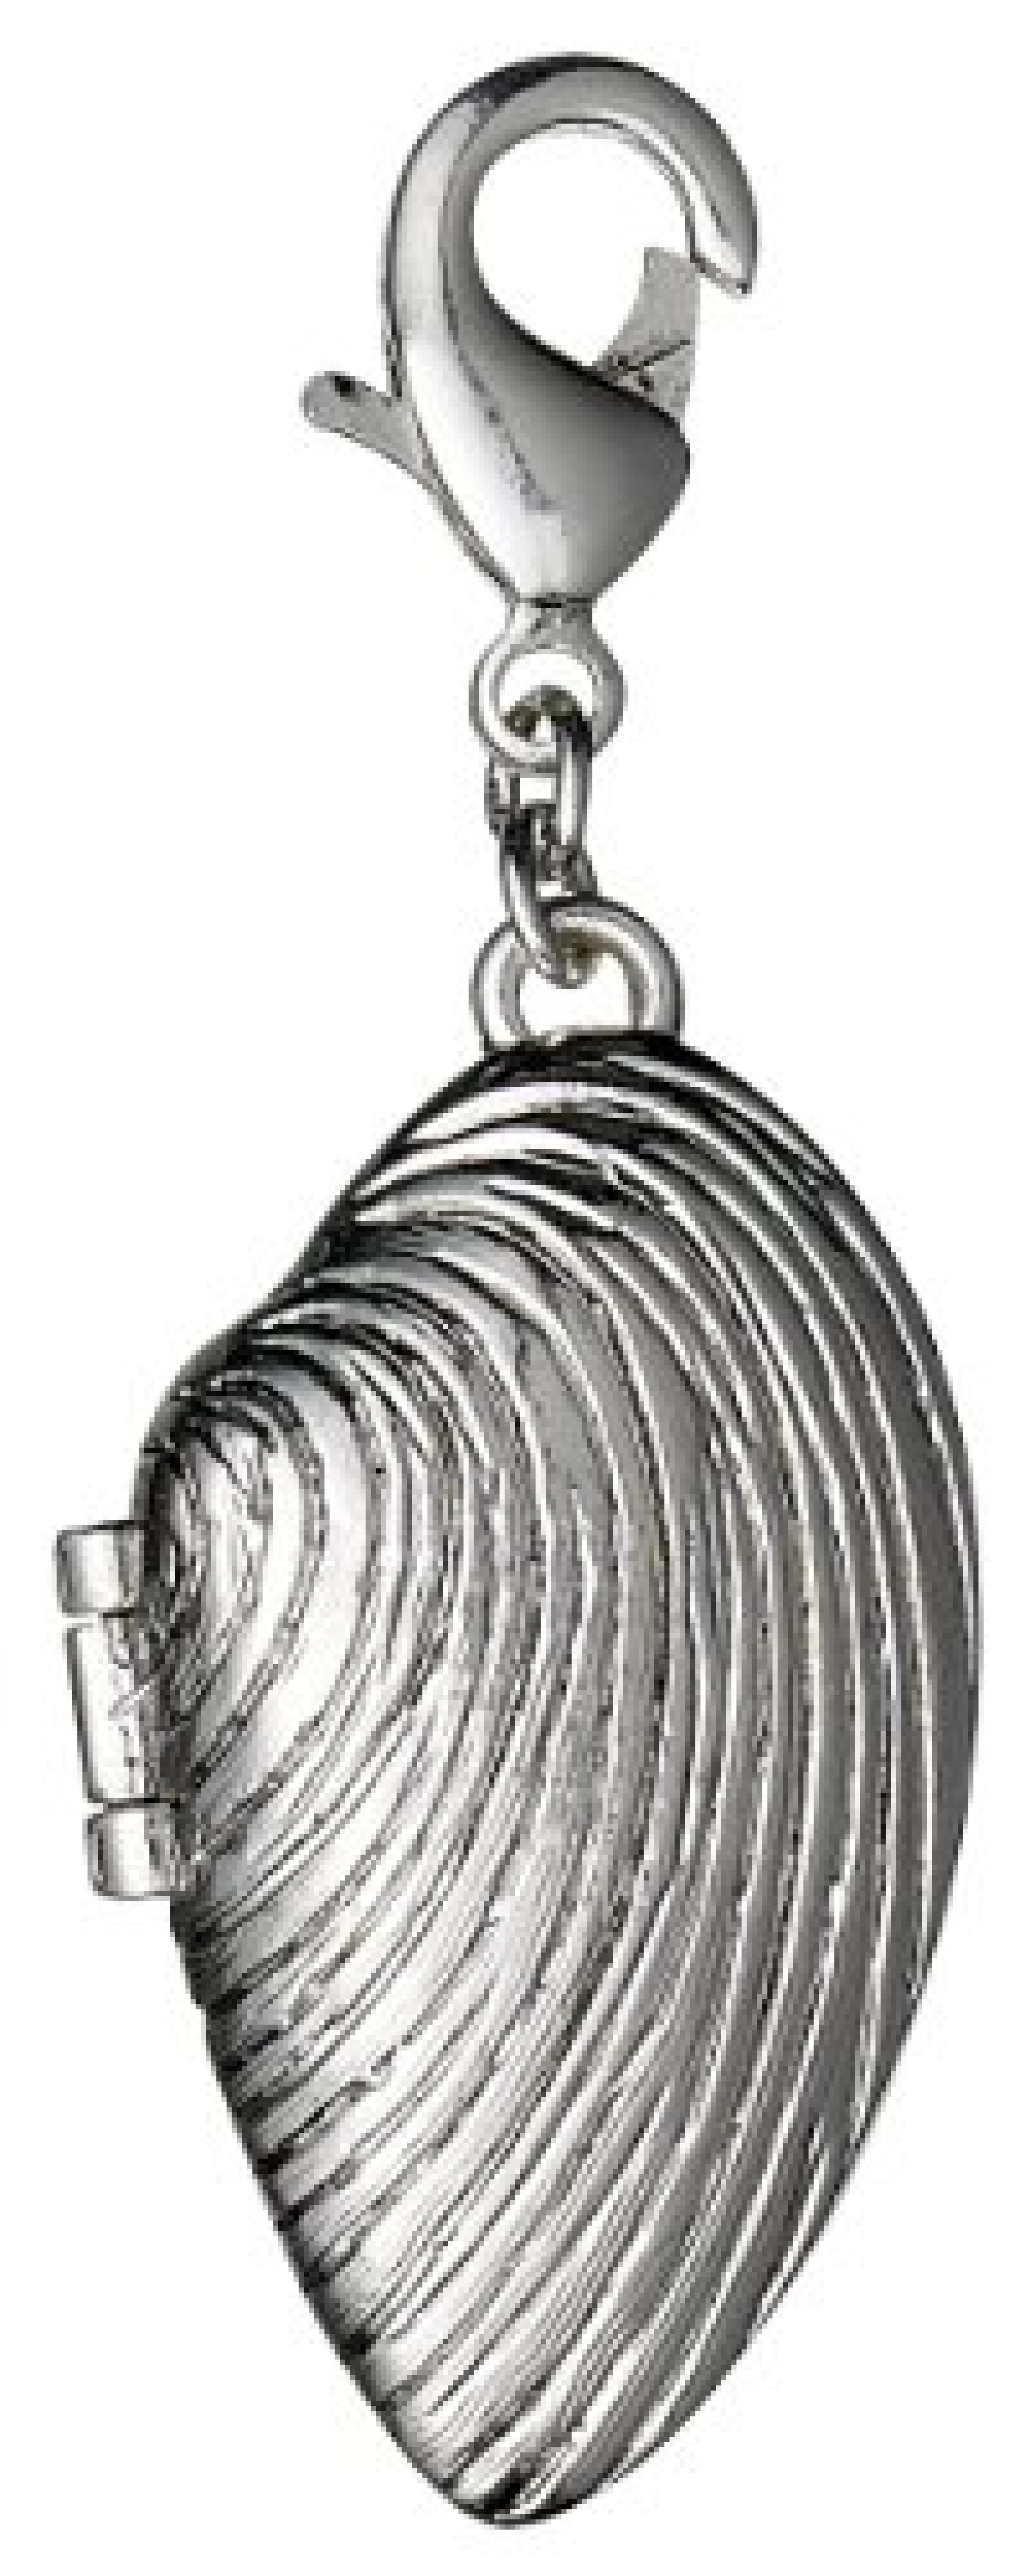 Pilgrim Jewelry Damen-Anhänger Messing aus der Serie Mega versilbert, 5.2 cm 411326008 